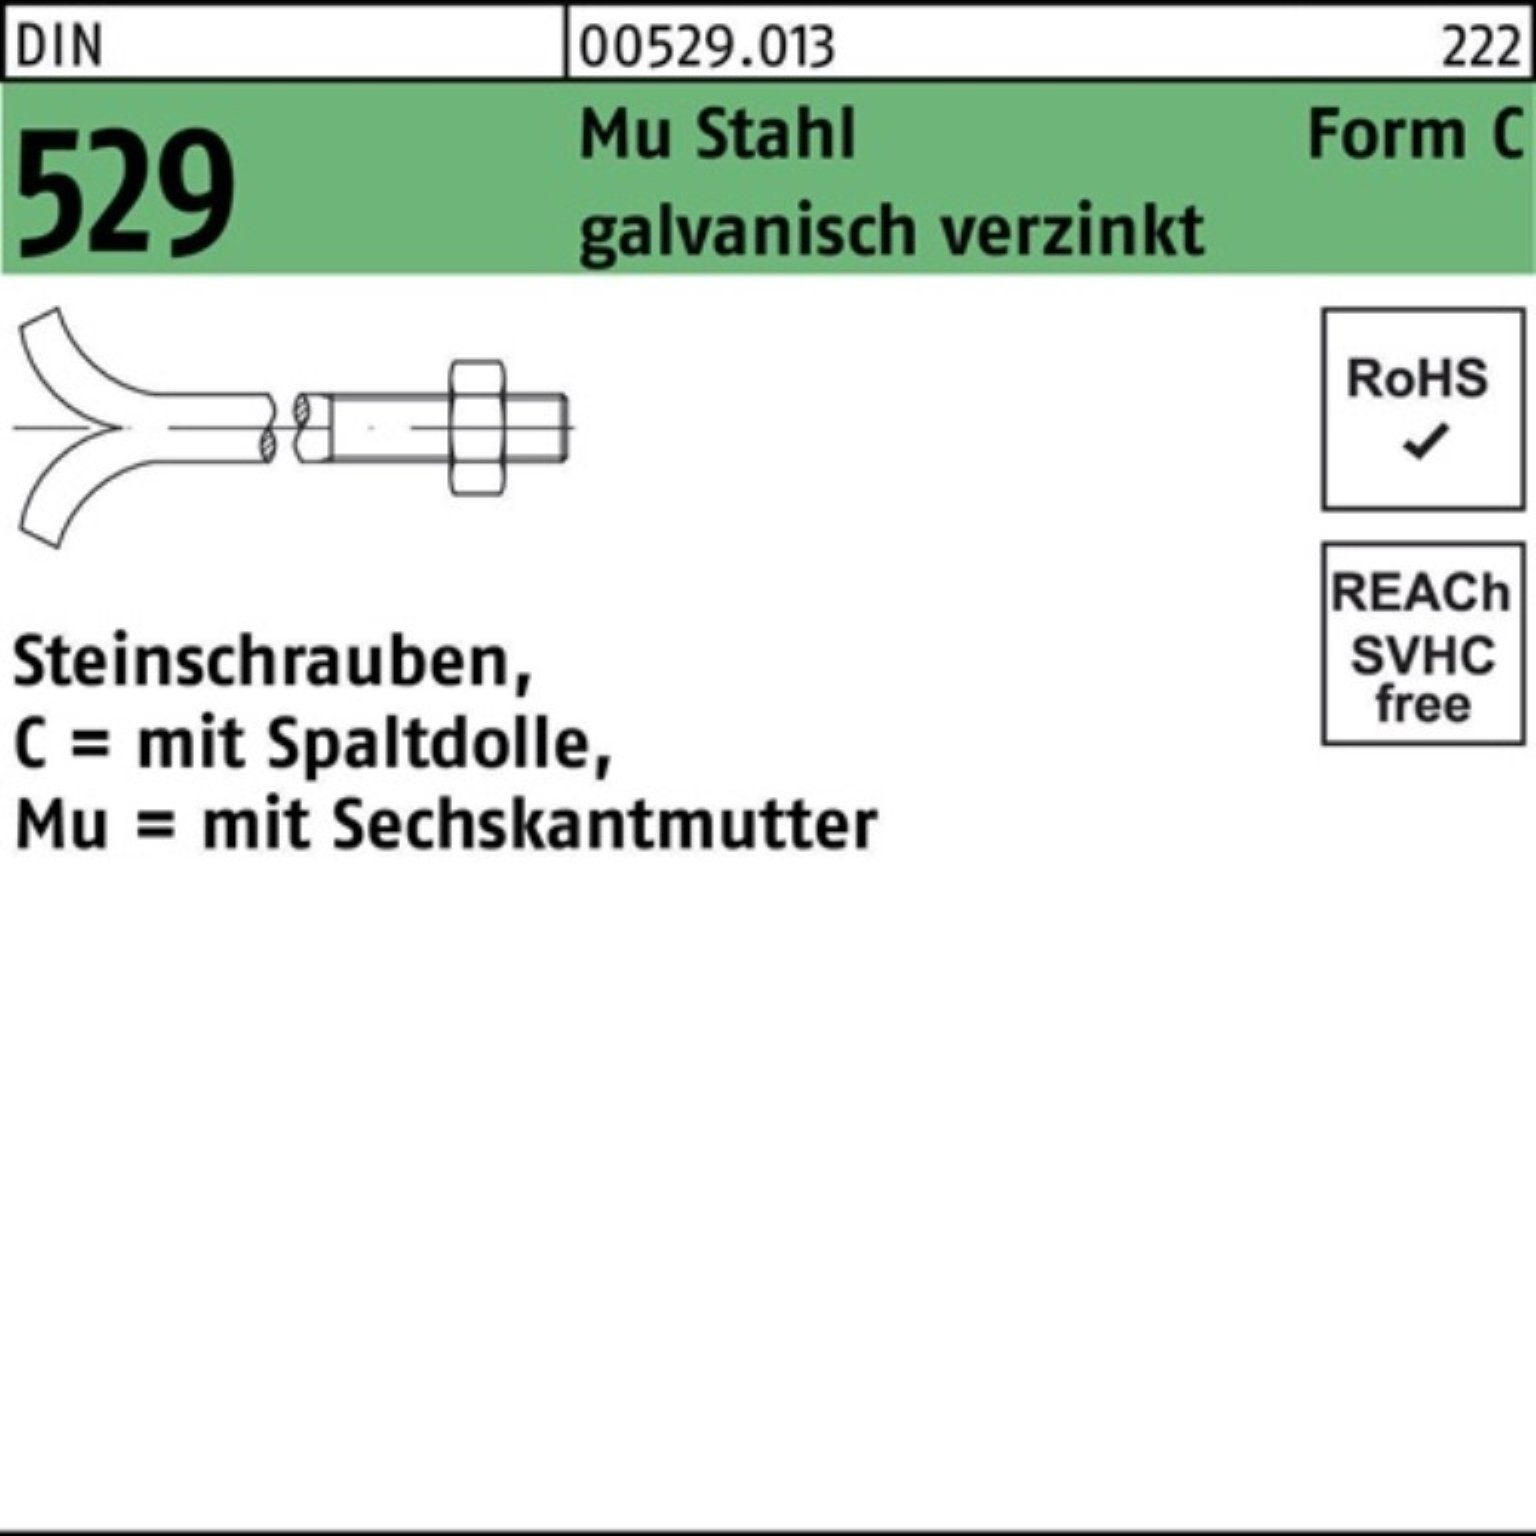 Reyher Schraube 100er Pack Steinschraube 16x100 Mu Spaltdolle/6-ktmutter 3. 529 DIN CM